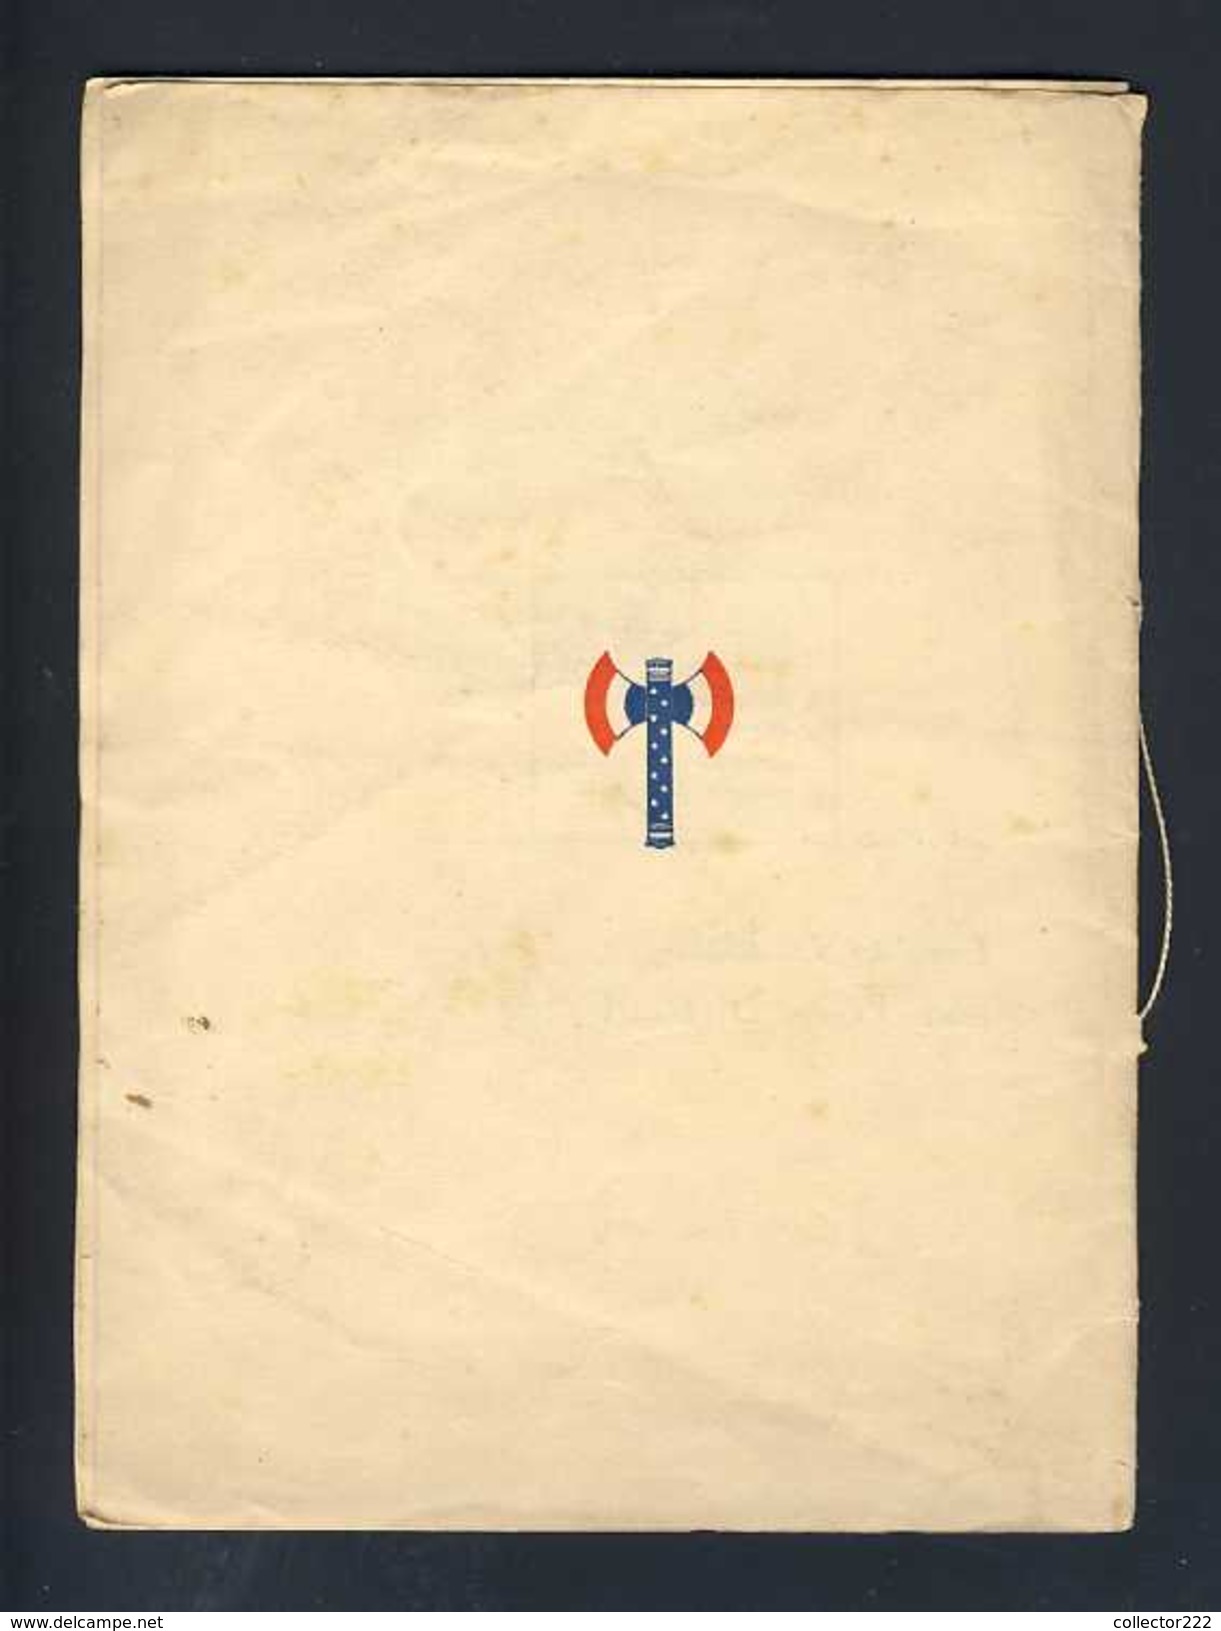 Brochure DE PROFUNDIS, Poesie De Zadig Dédié à PETAIN. Editions Erinyes 1949. Ed. 550 Exemplaires, Ex.num.166 (112460) - Auteurs Français